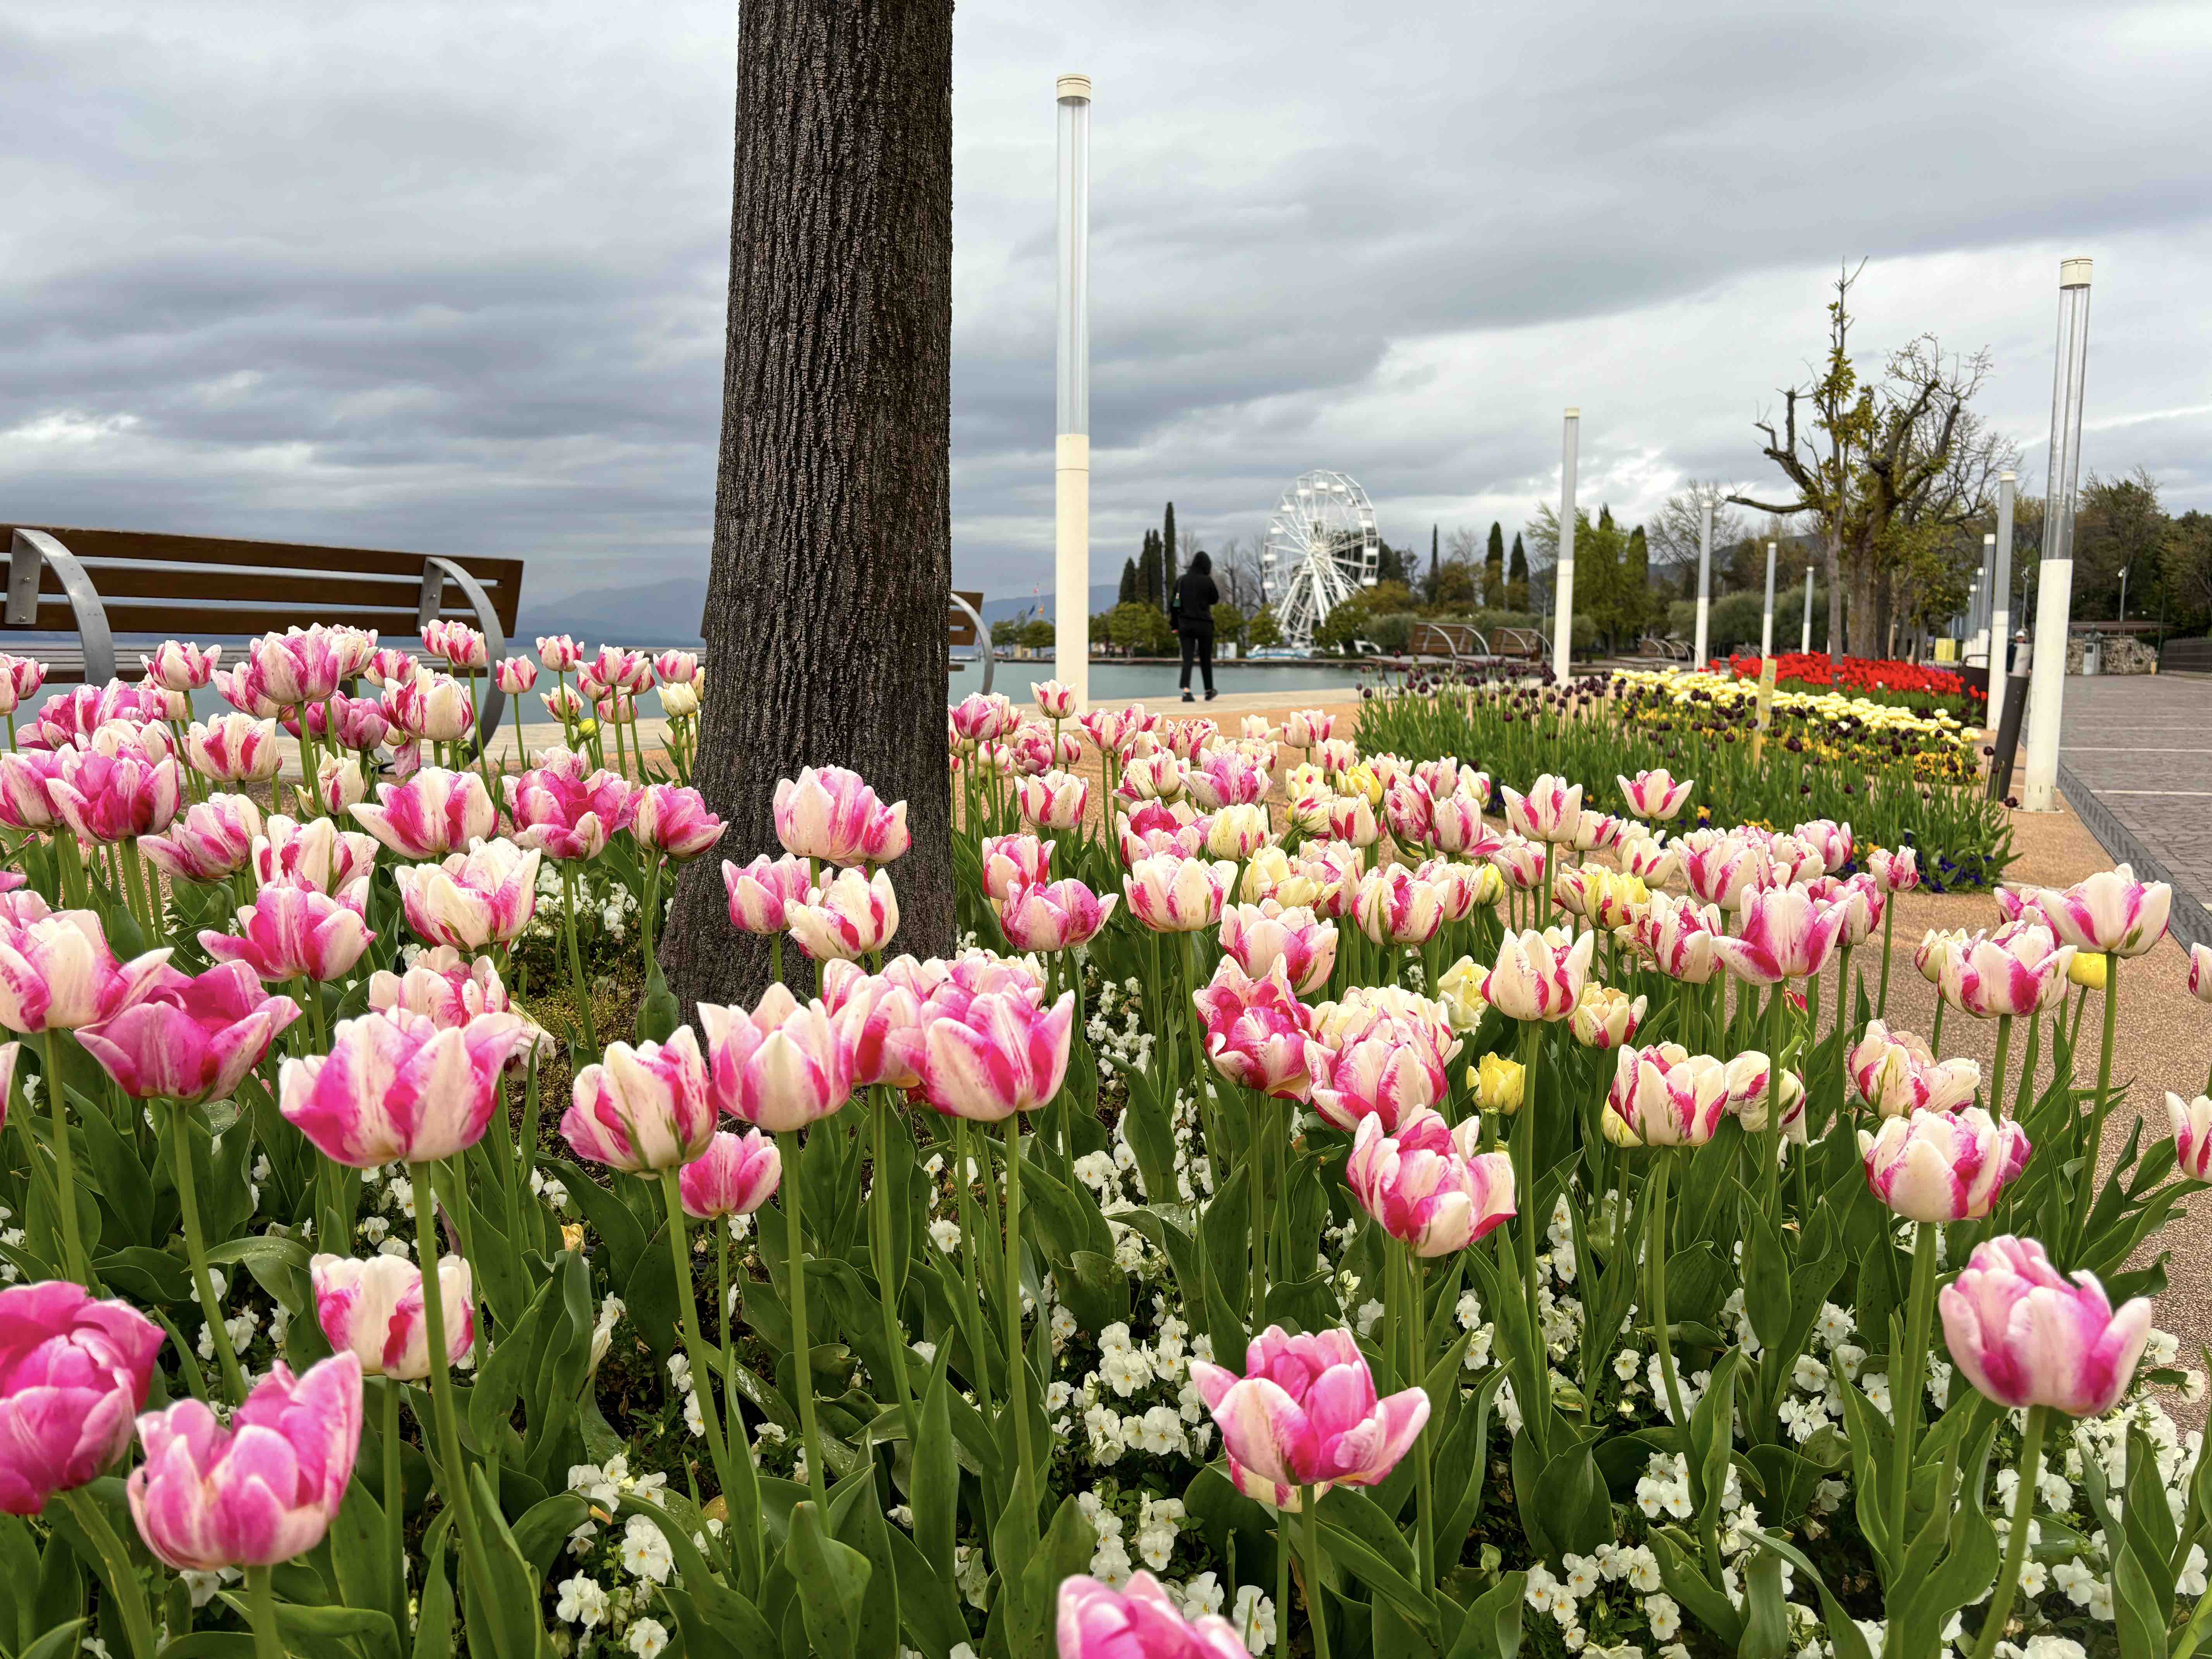 A Bardolino è “Tulipanomania” con 50mila tulipani in fiore